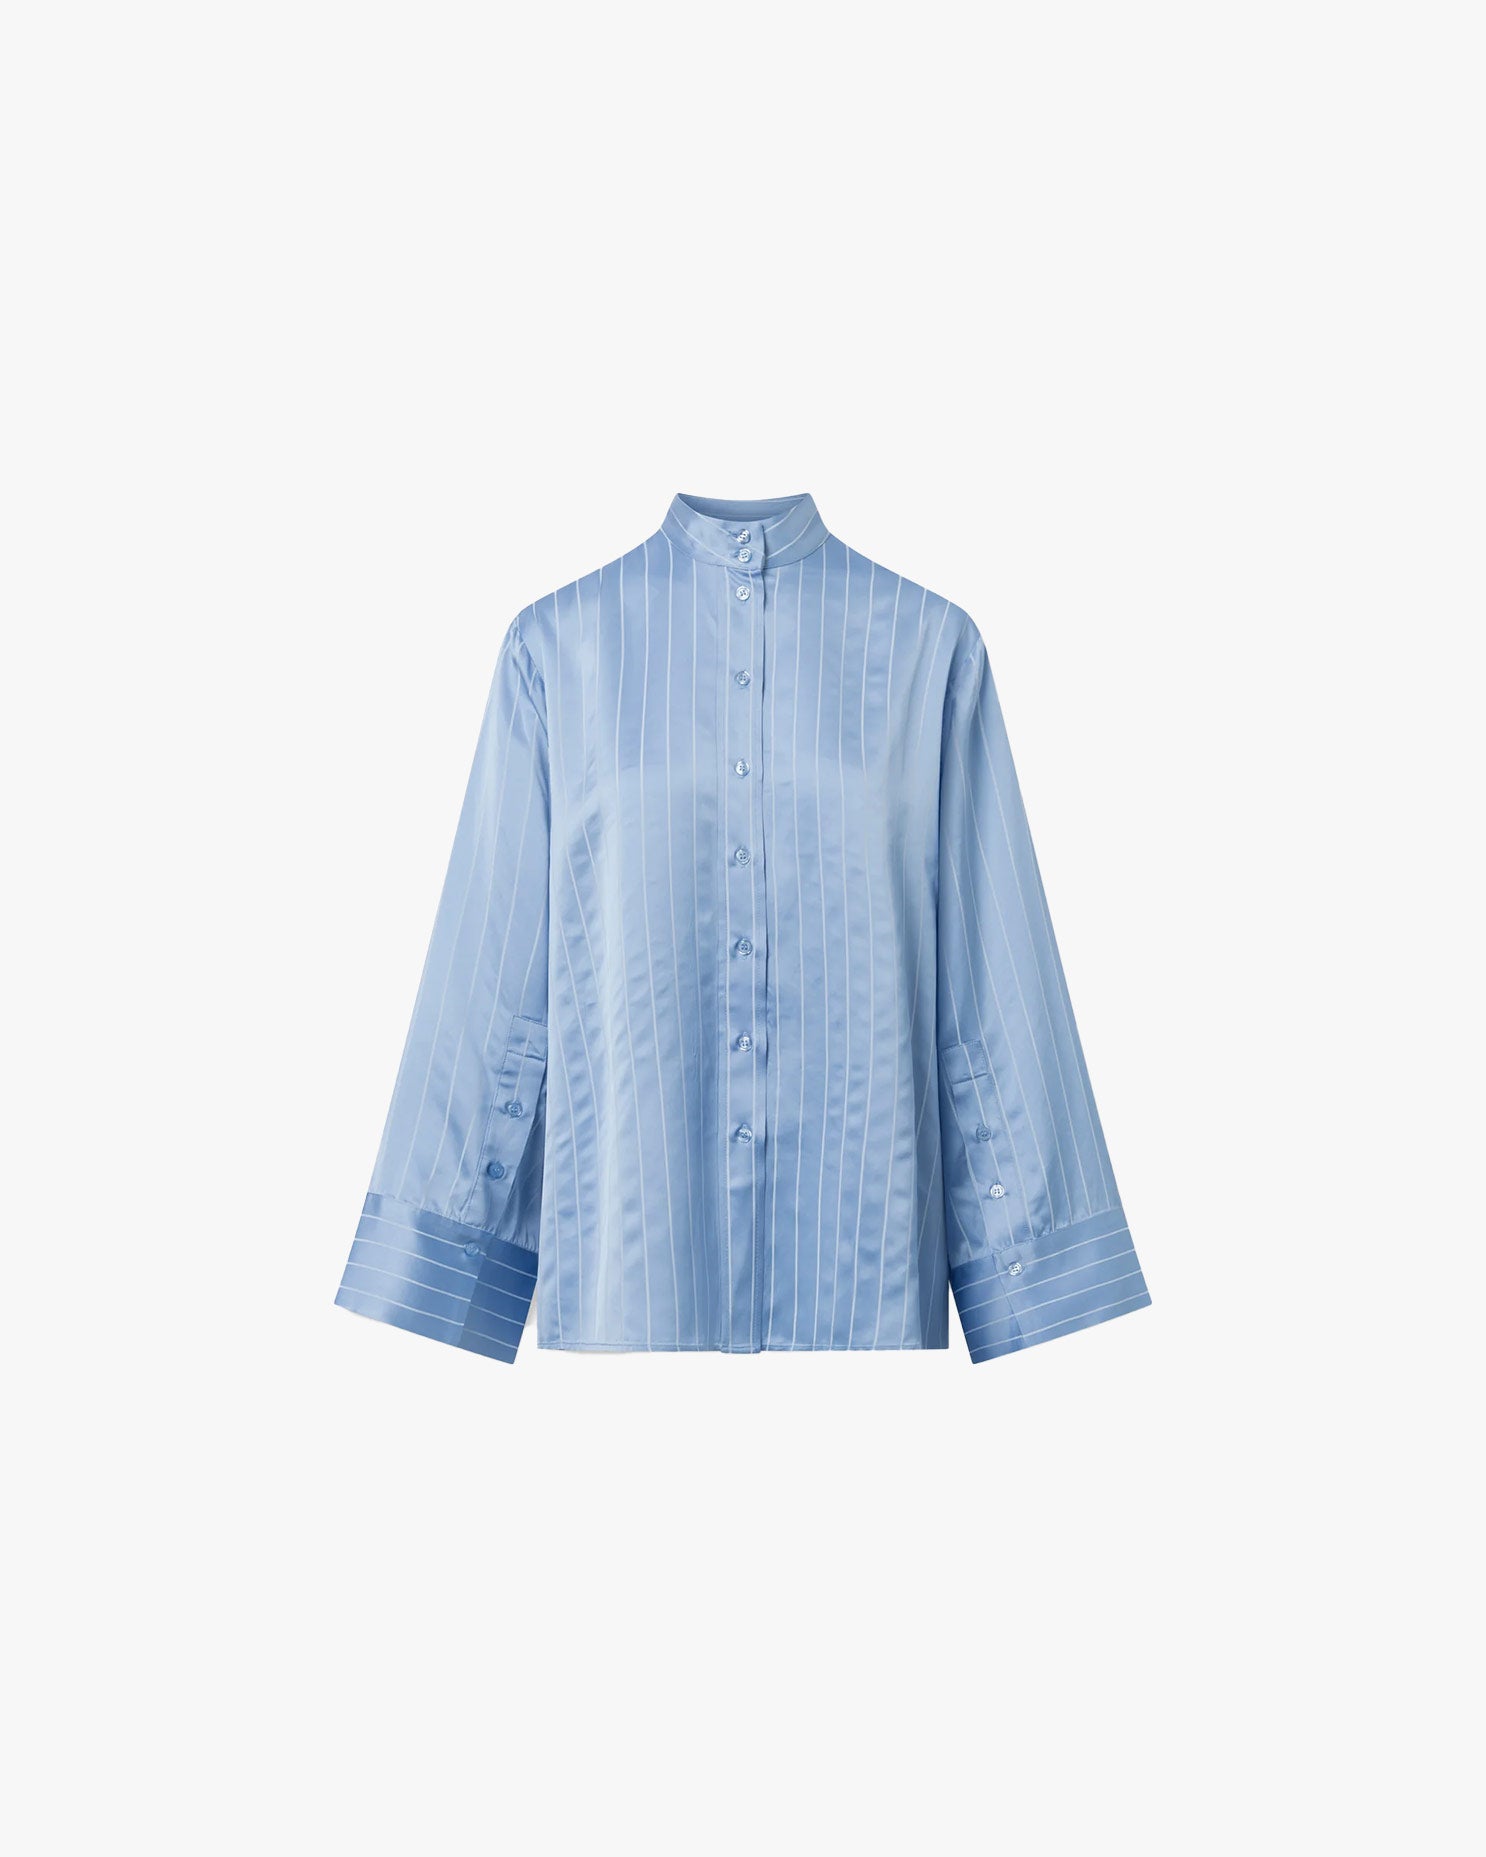 Himari Shirt in Blue